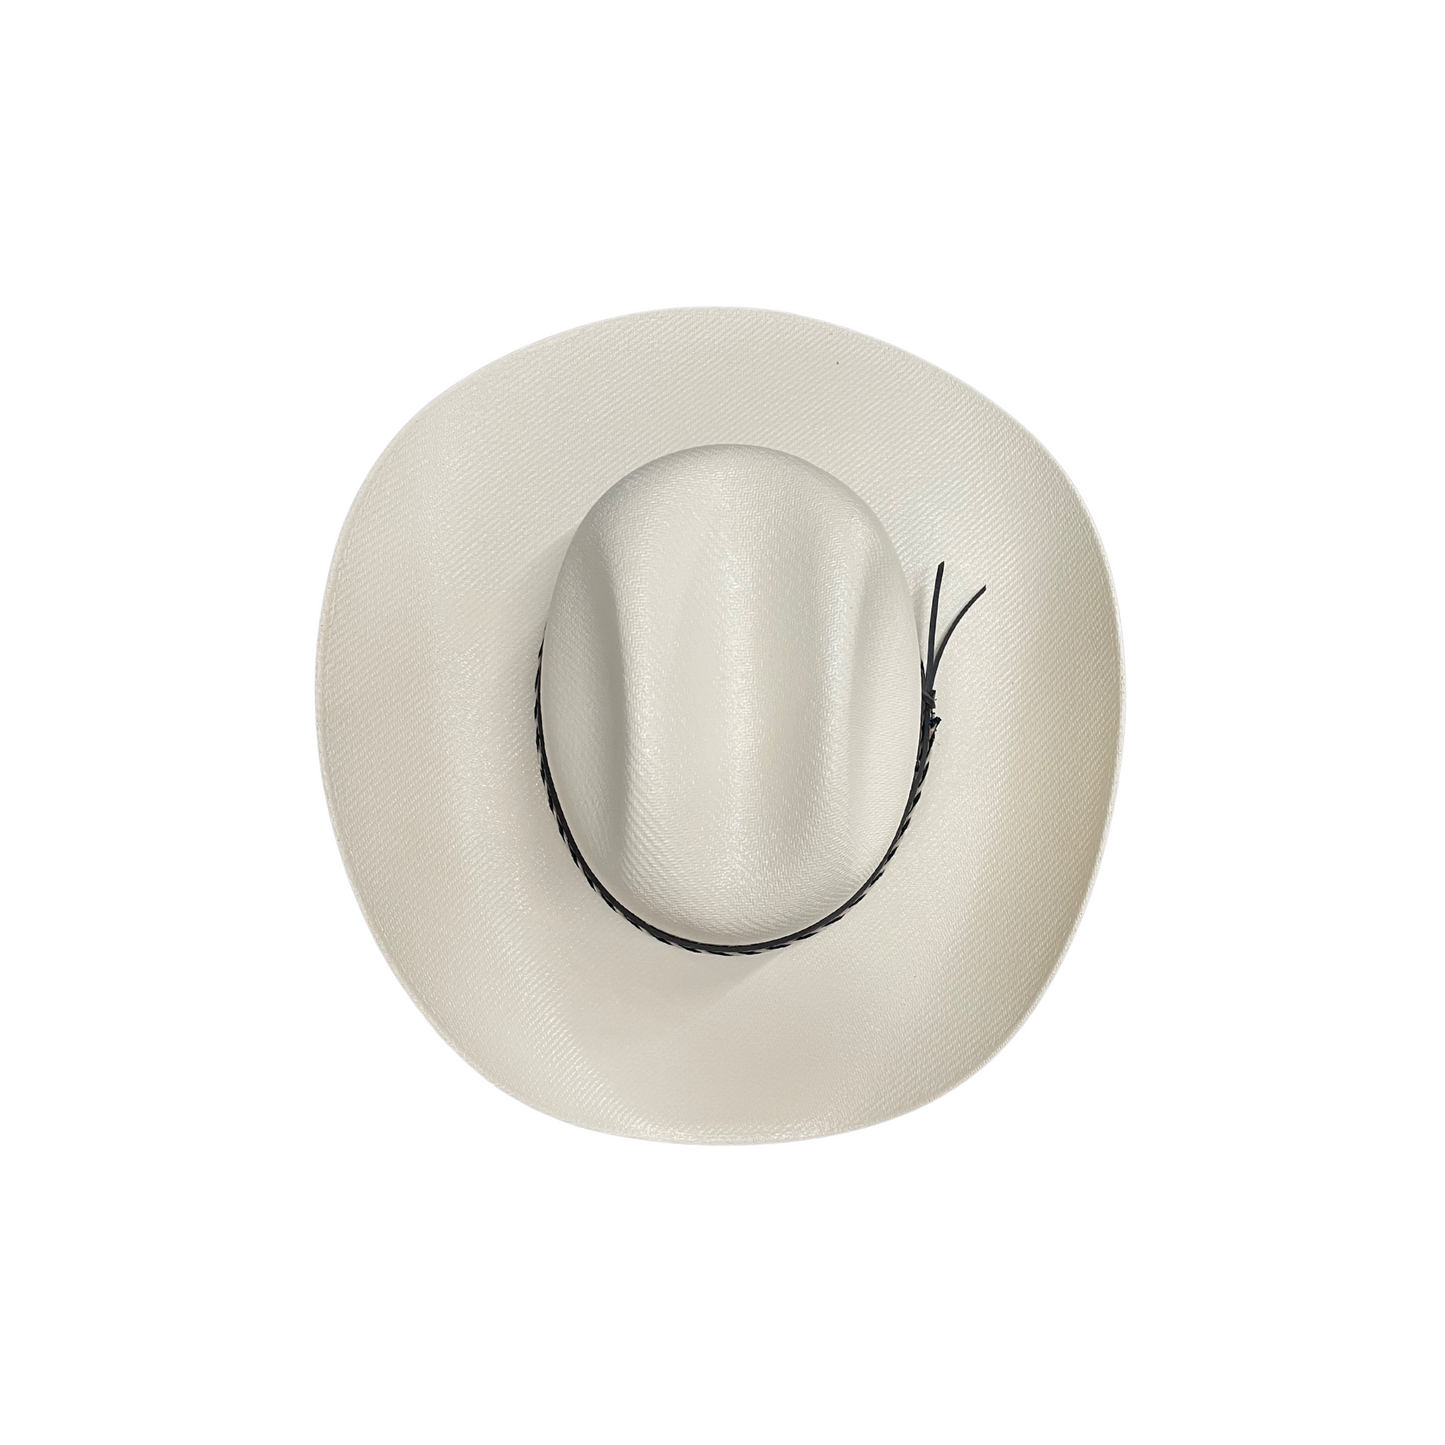 Cattleman Straw Cowboy Hat D&D